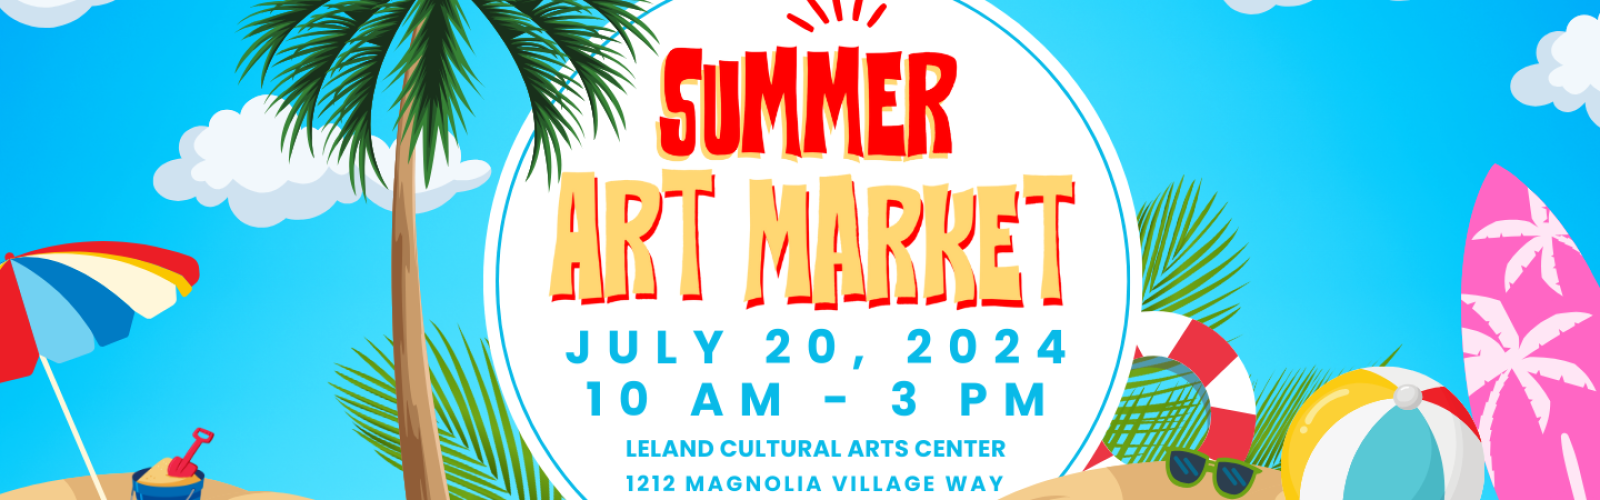 Summer Art Market Banner